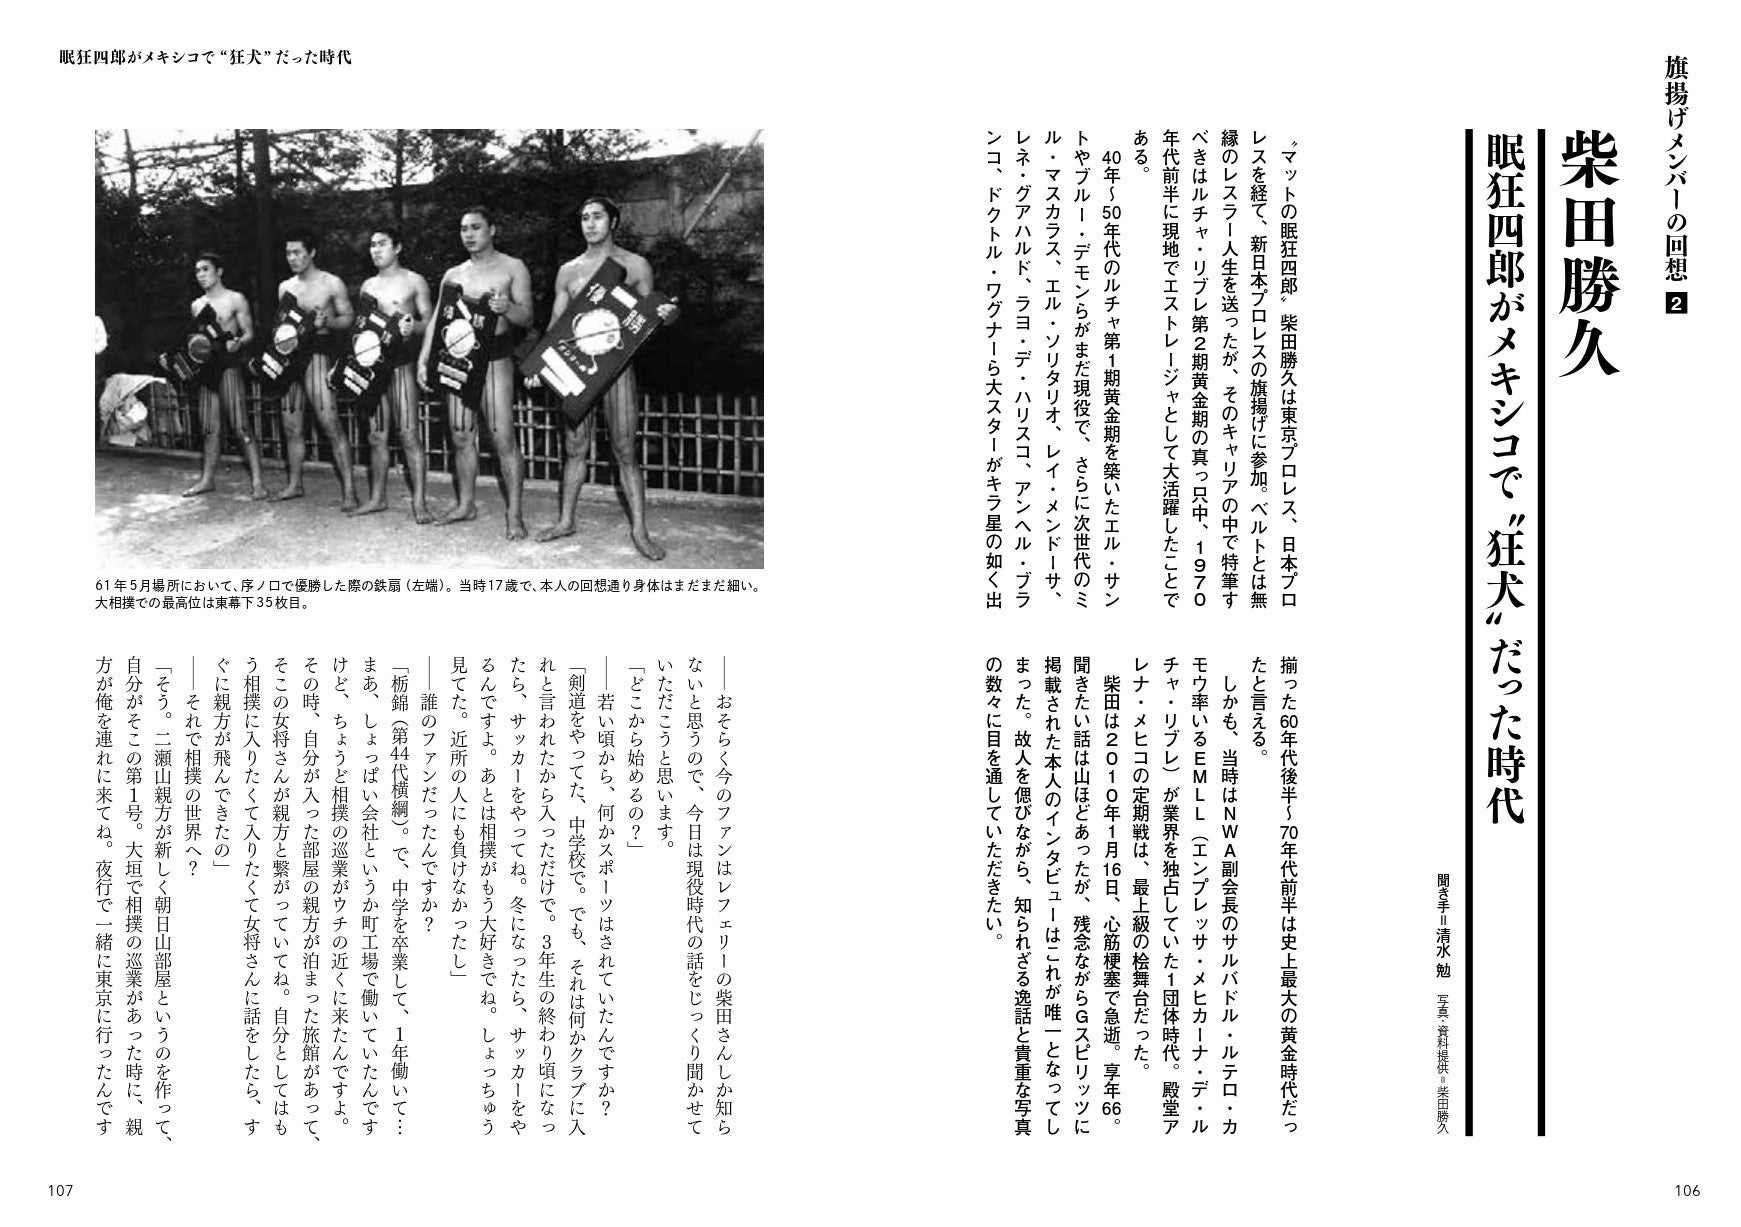 2010年に亡くなった新日本プロレスの旗揚げメンバー、柴田勝久の貴重なロングインタビューも掲載